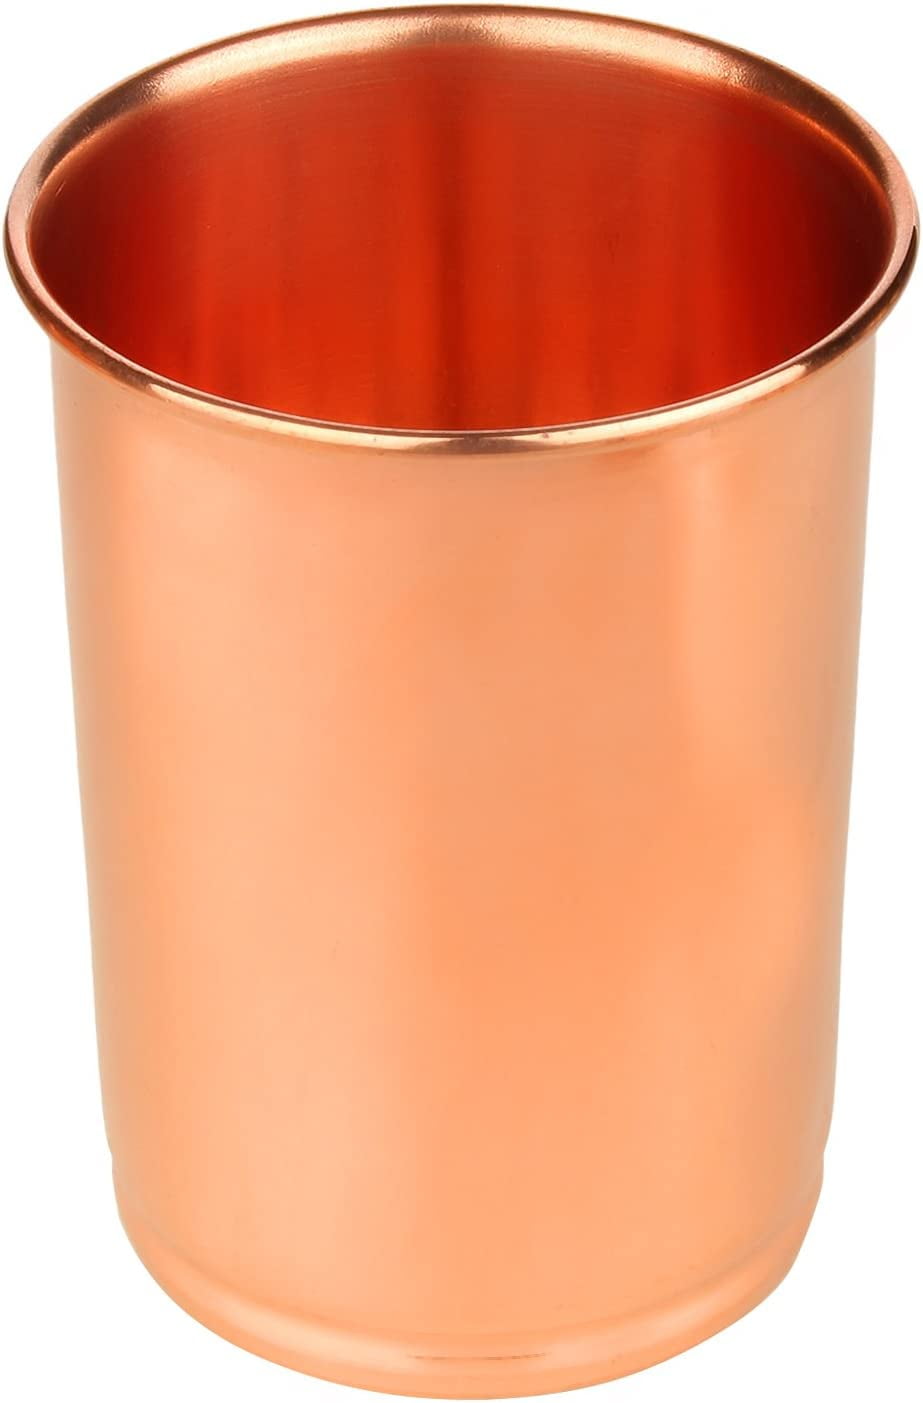 Premium Pure Copper Cups / Tumblers – copperdirect